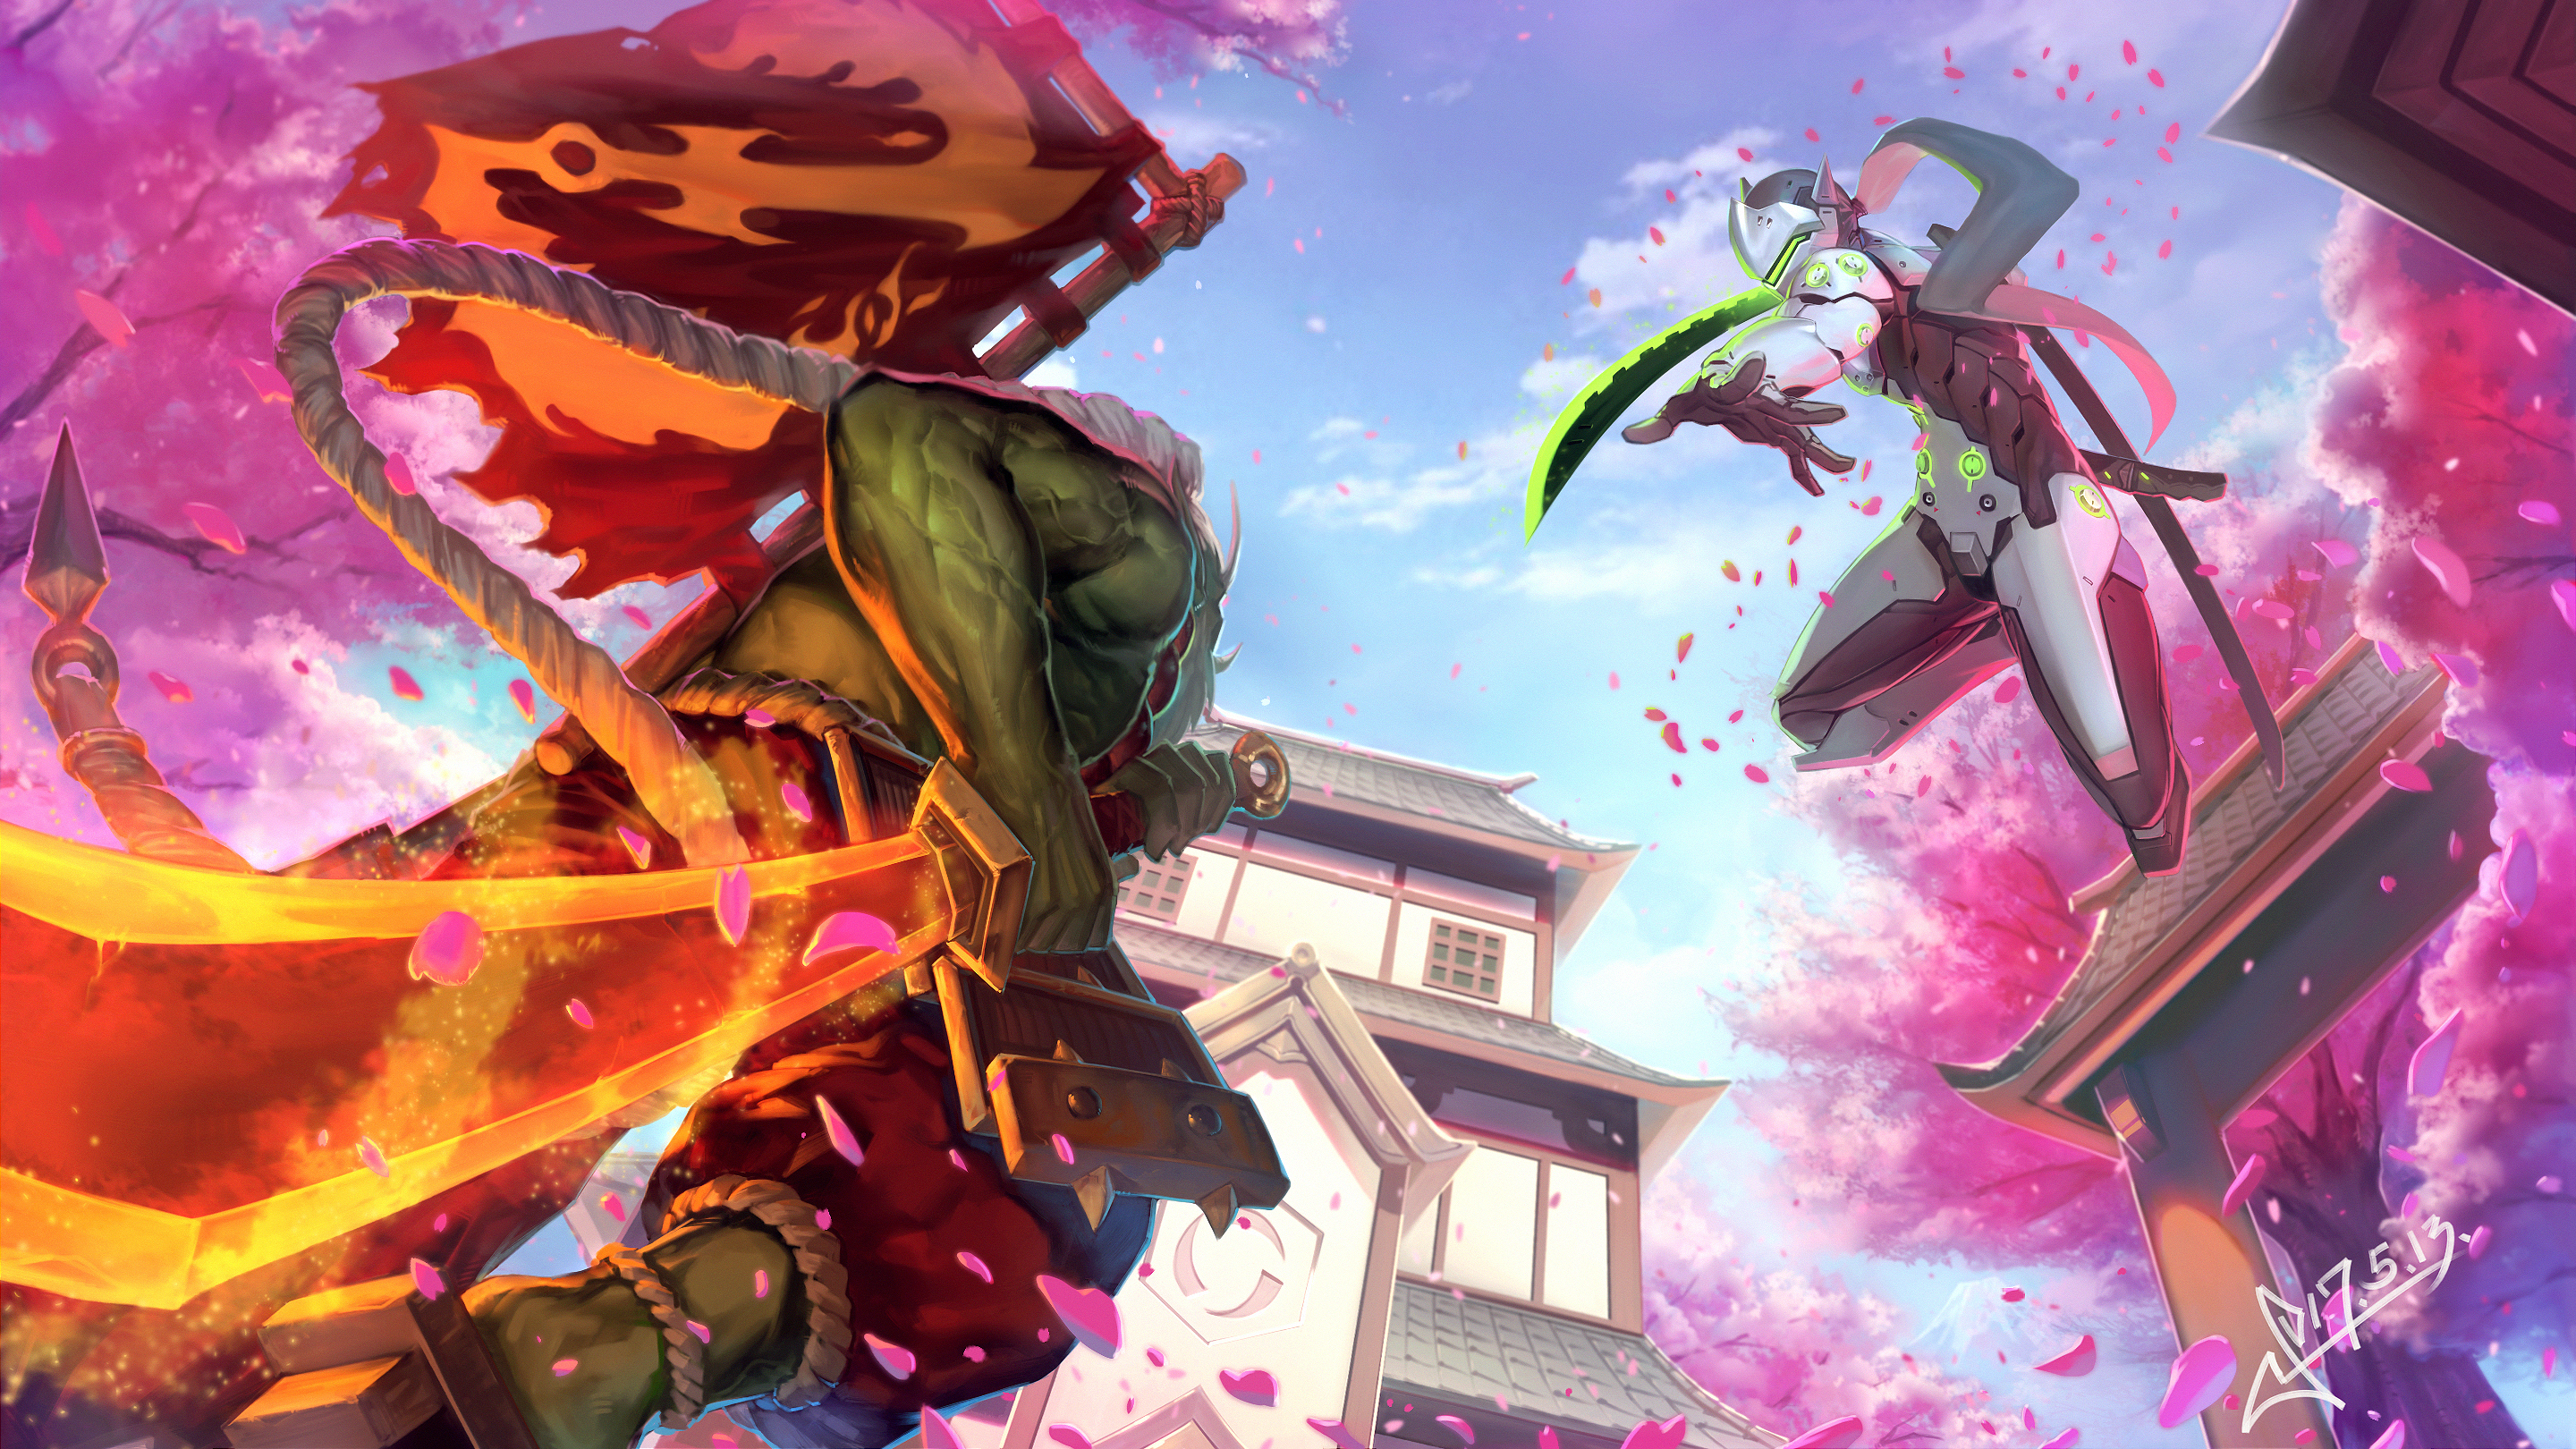 genji (overwatch), heroes of the storm, video game, overwatch, battle, sakura, samurai, sword